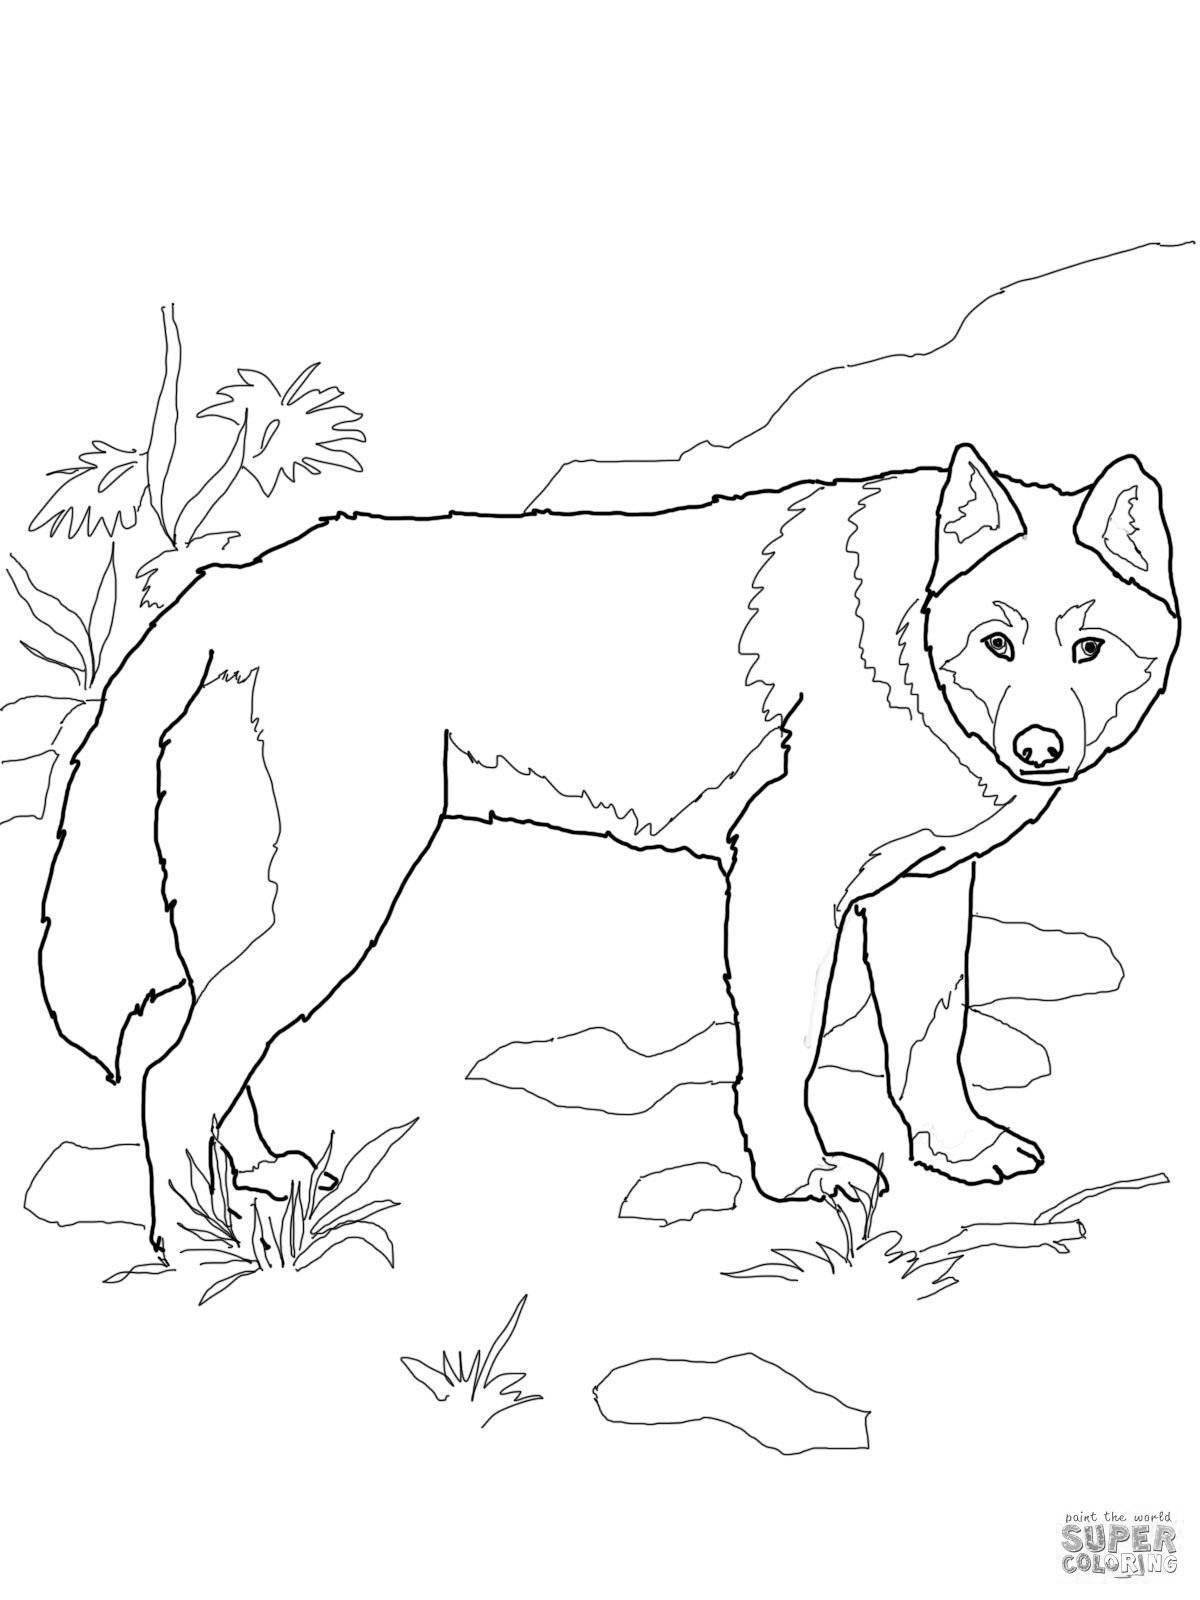 Собака динго распечатать. Собака Динго раскраска для детей. Дикая собака Динго раскраска. Волк раскраска для детей. Рисунок дикого животного.